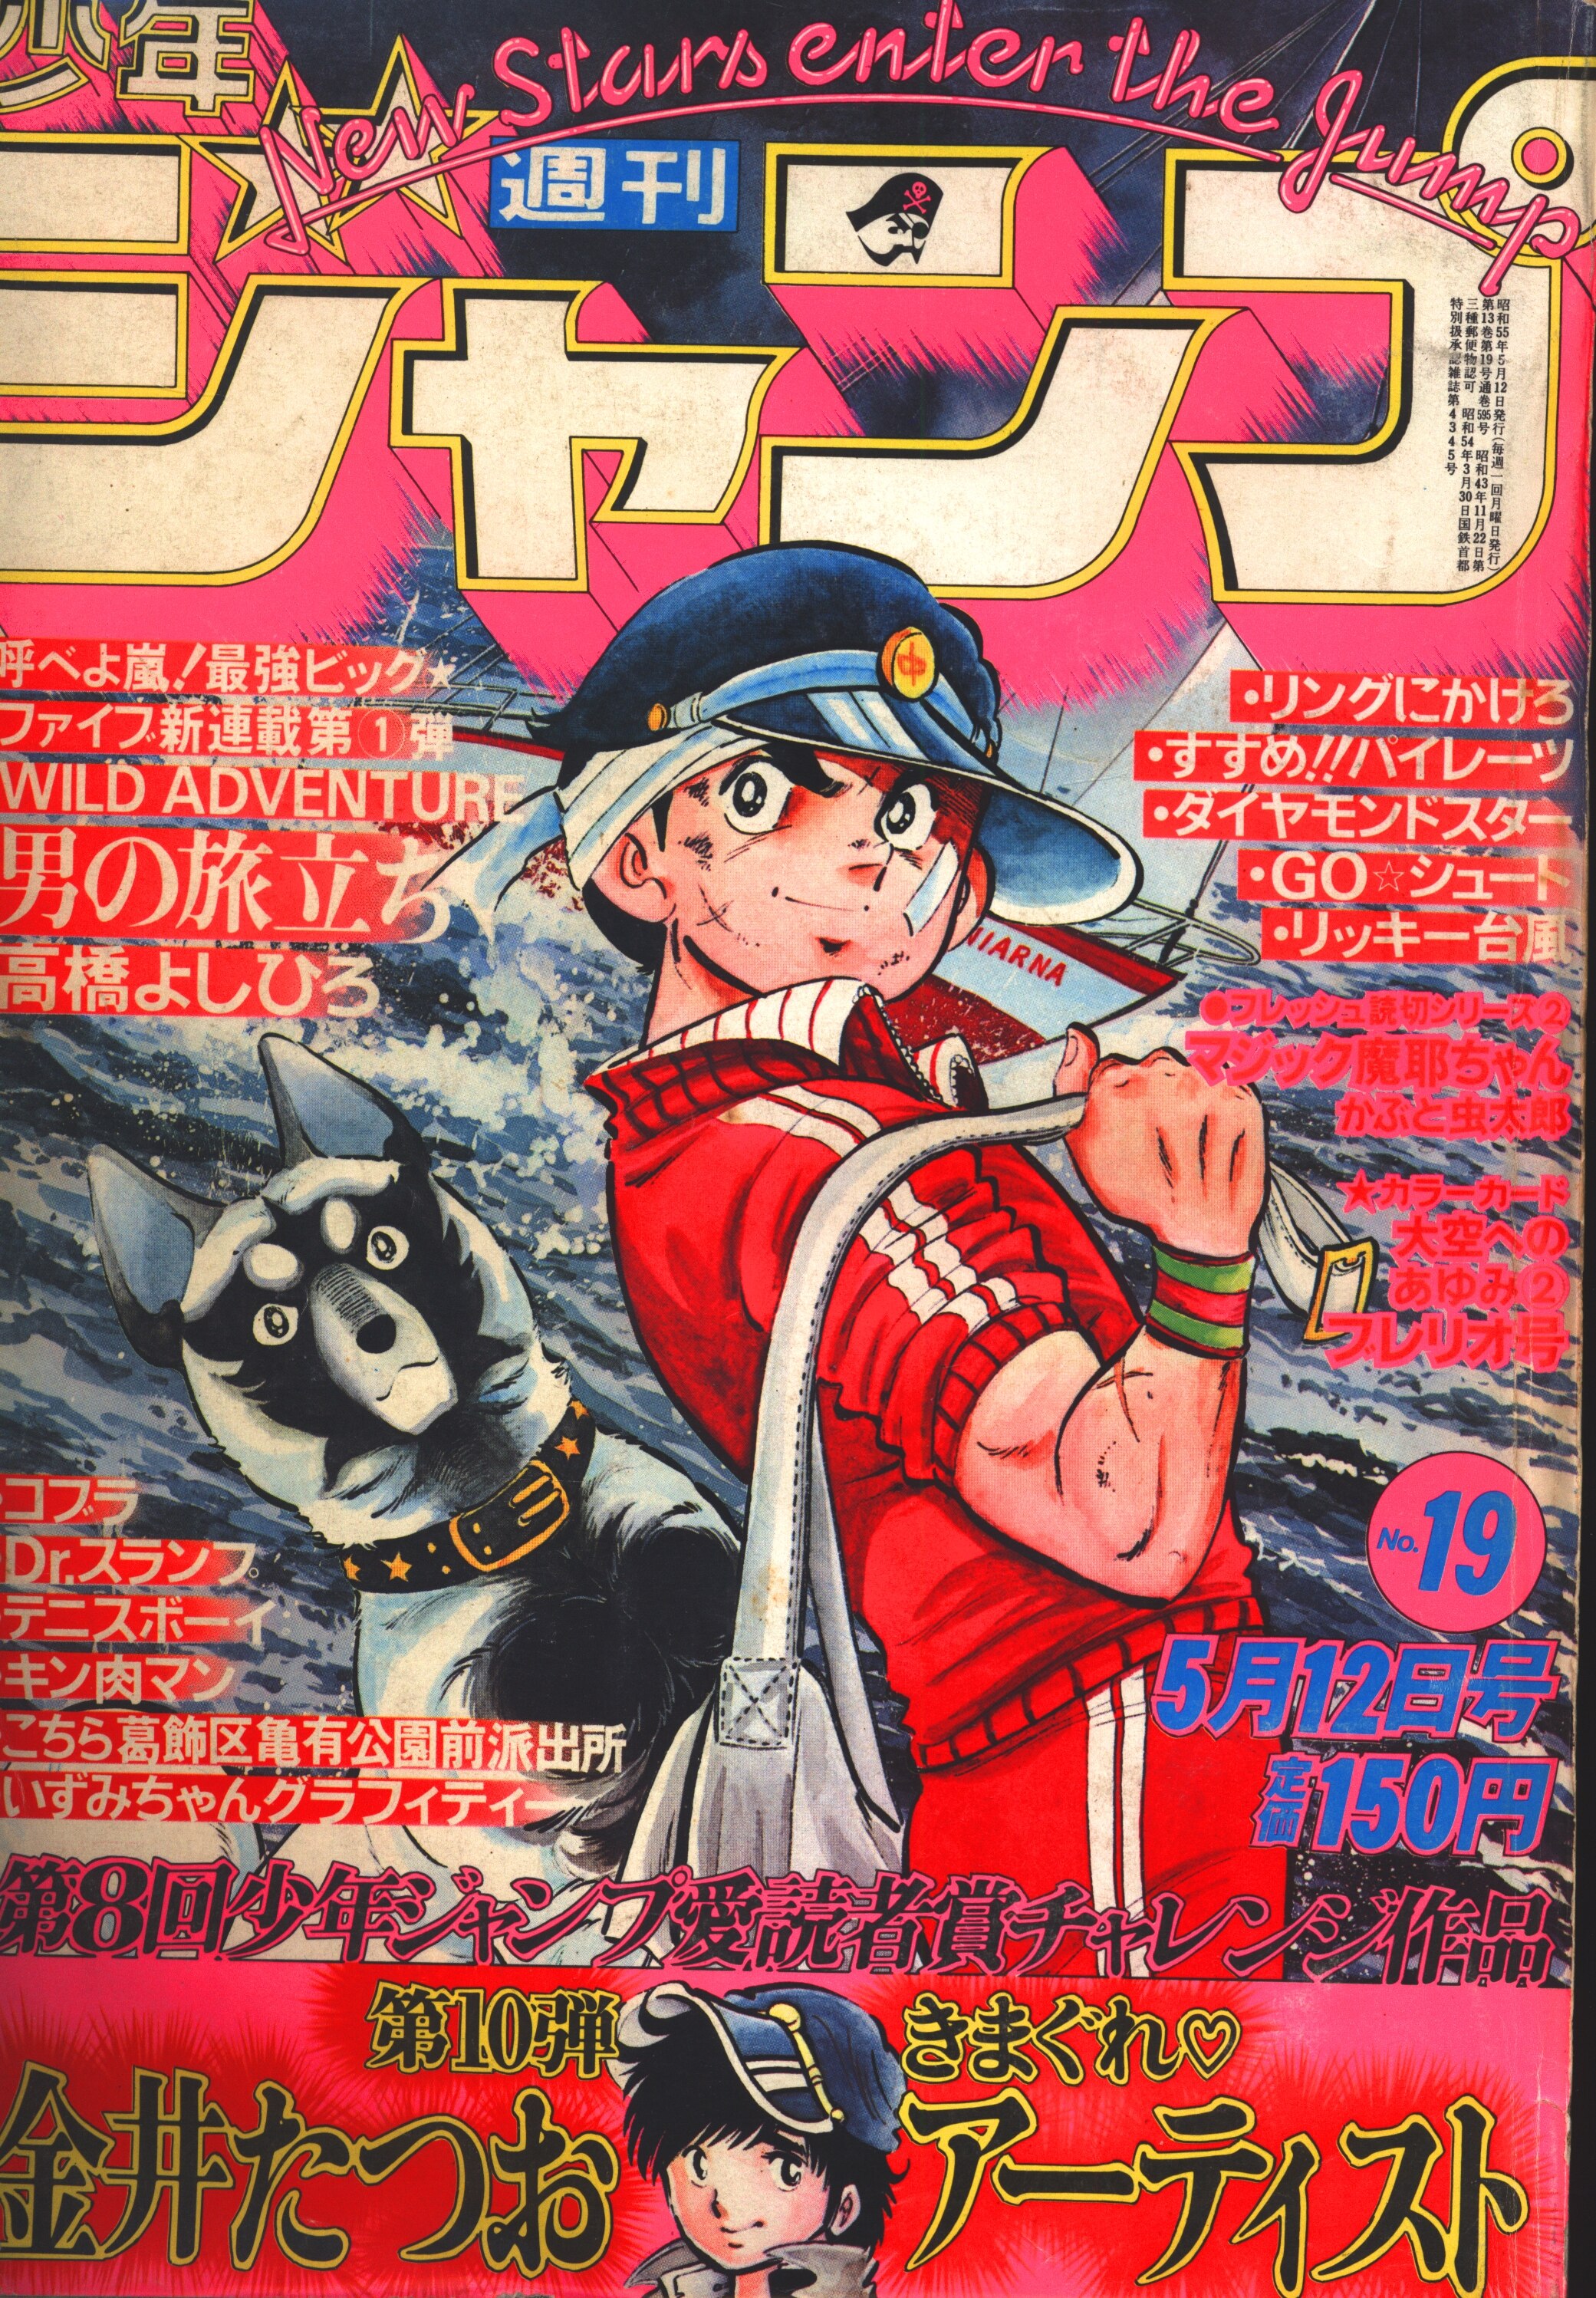 集英社 1980年 昭和55年 の漫画雑誌 週刊少年ジャンプ 1980年 昭和55年 19 8019 まんだらけ Mandarake